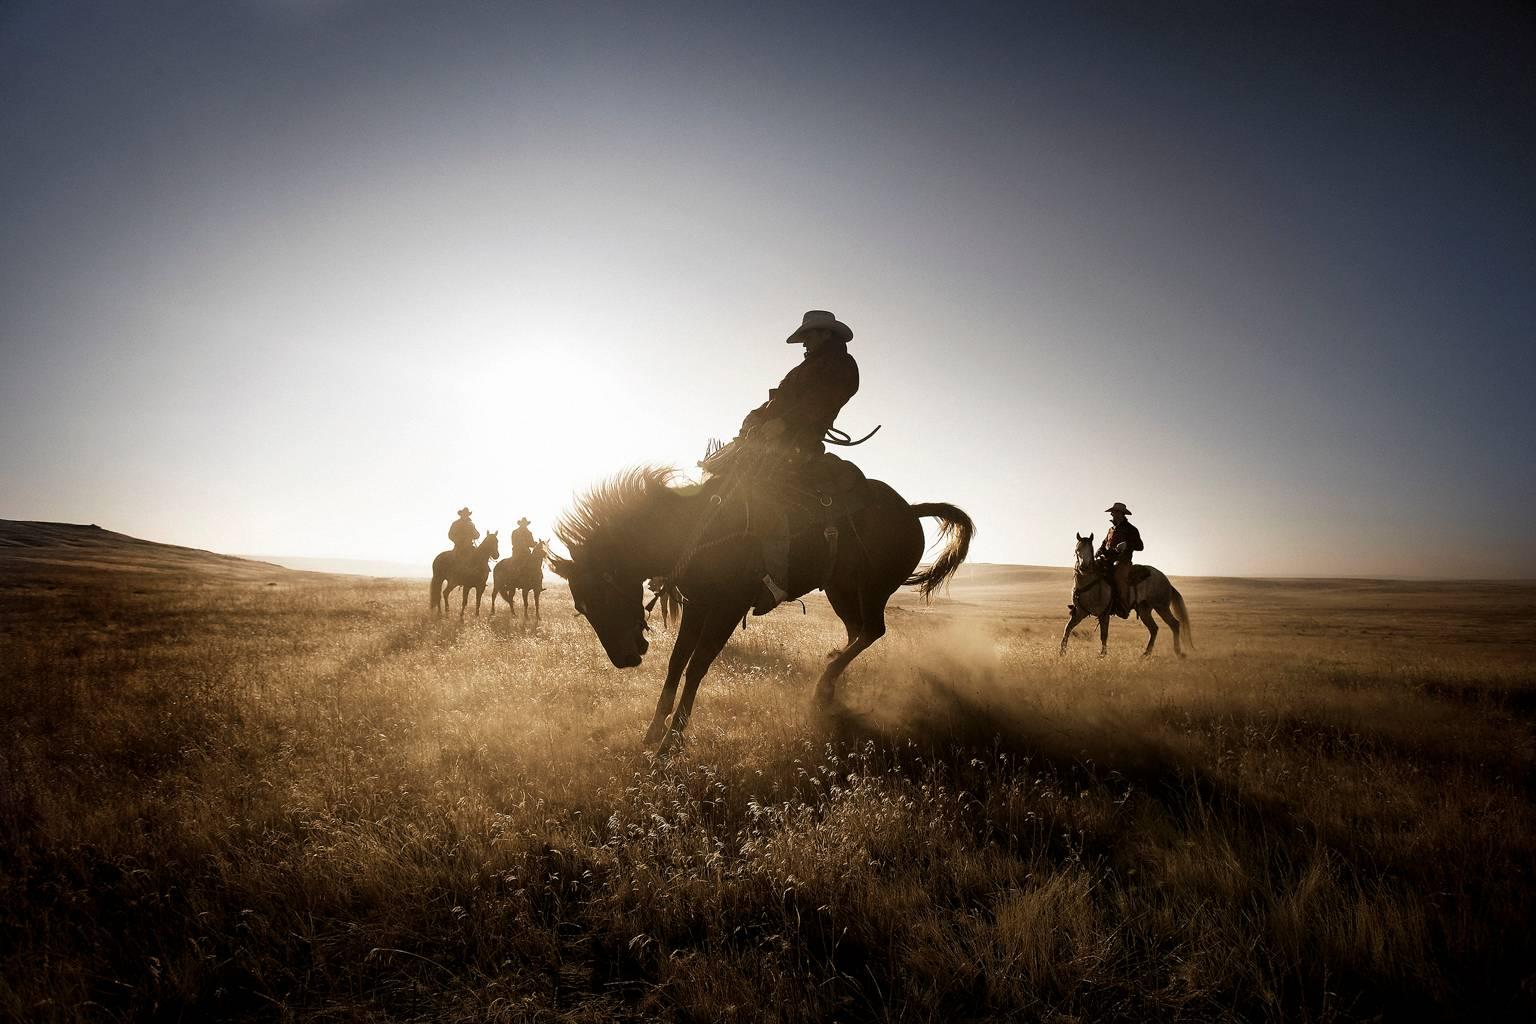 Chris Gordaneer Color Photograph - Cowboys